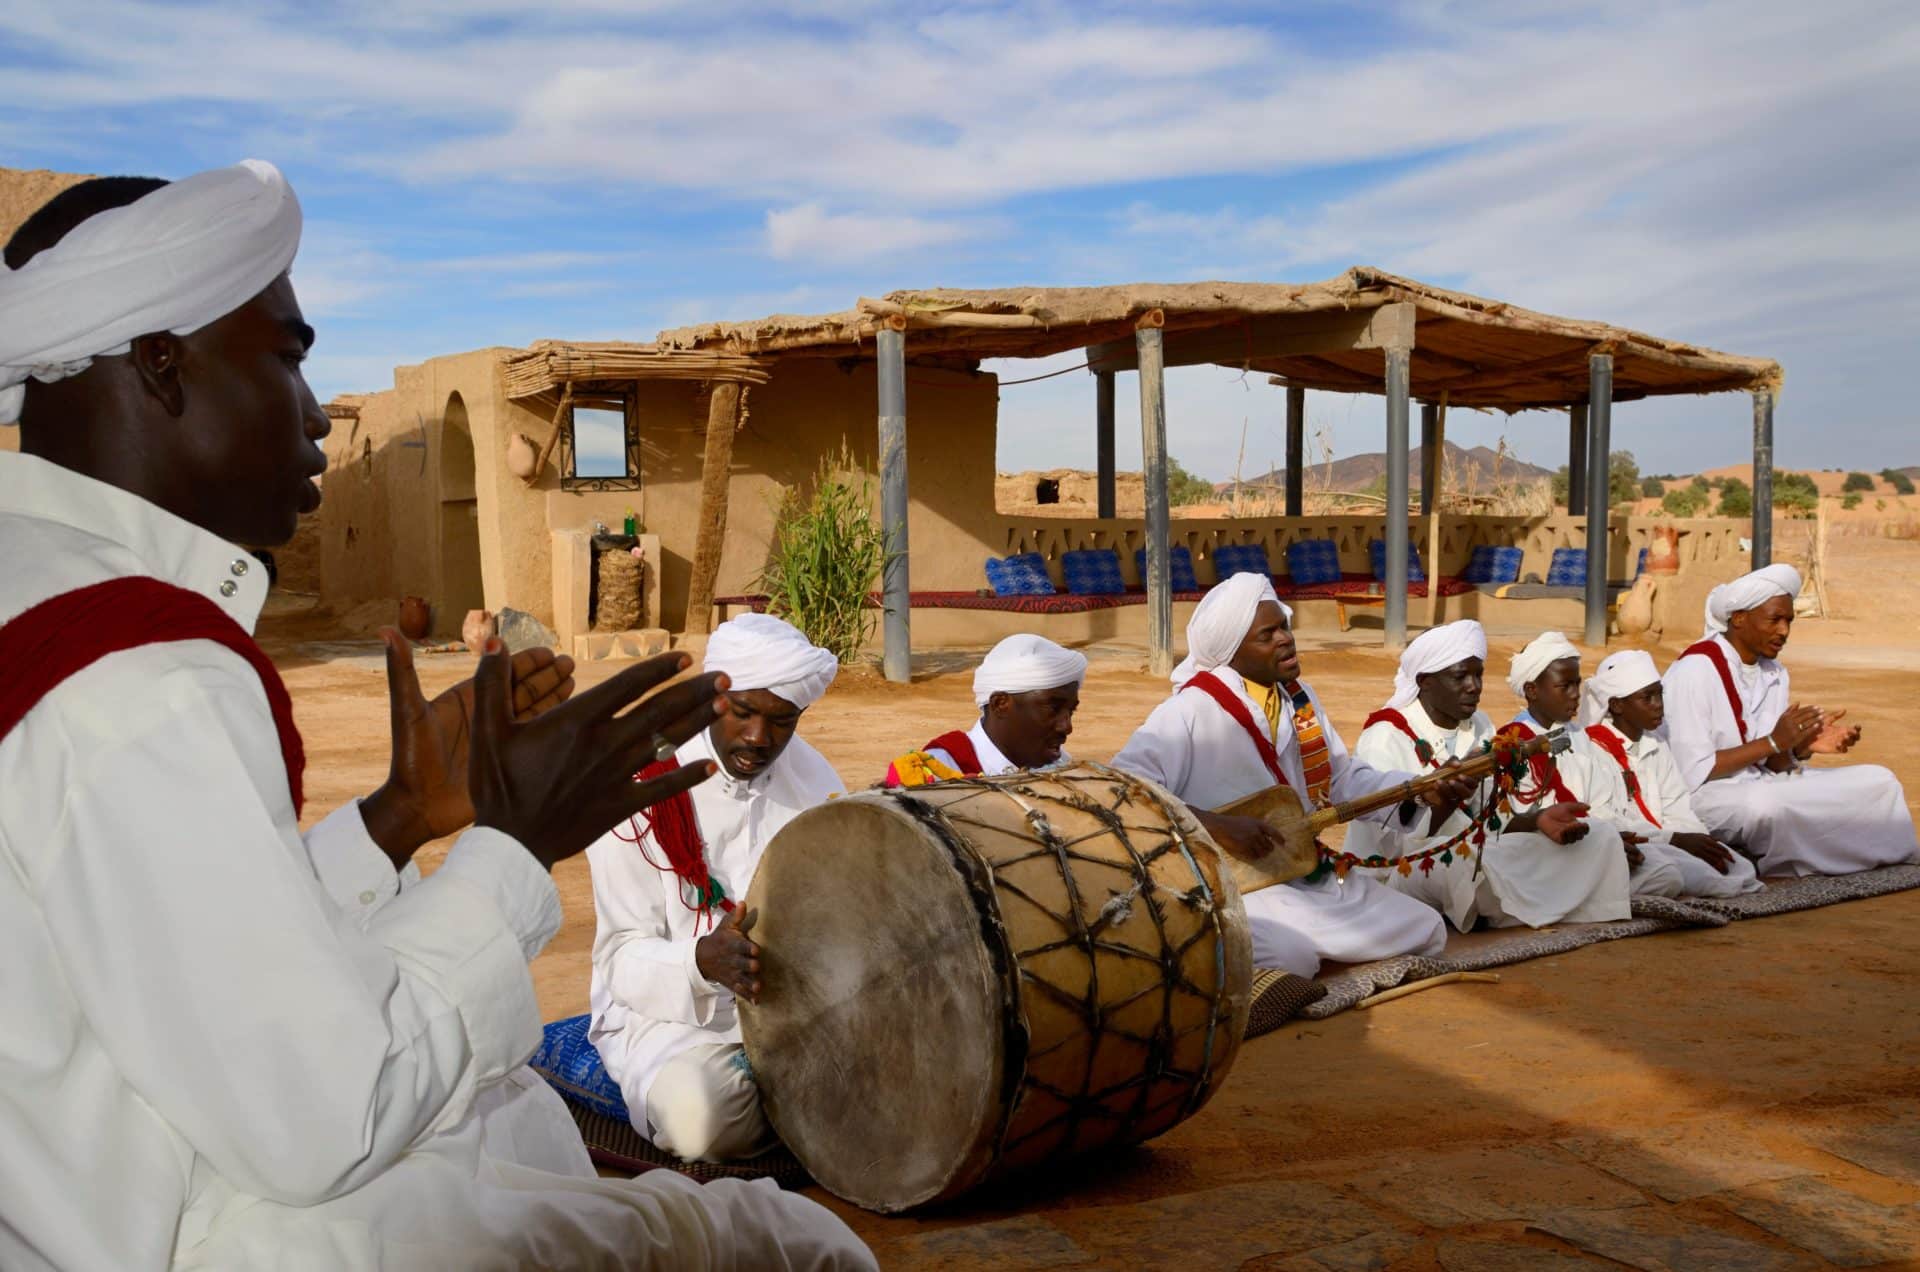 ▷ La danza del vientre en Marruecos